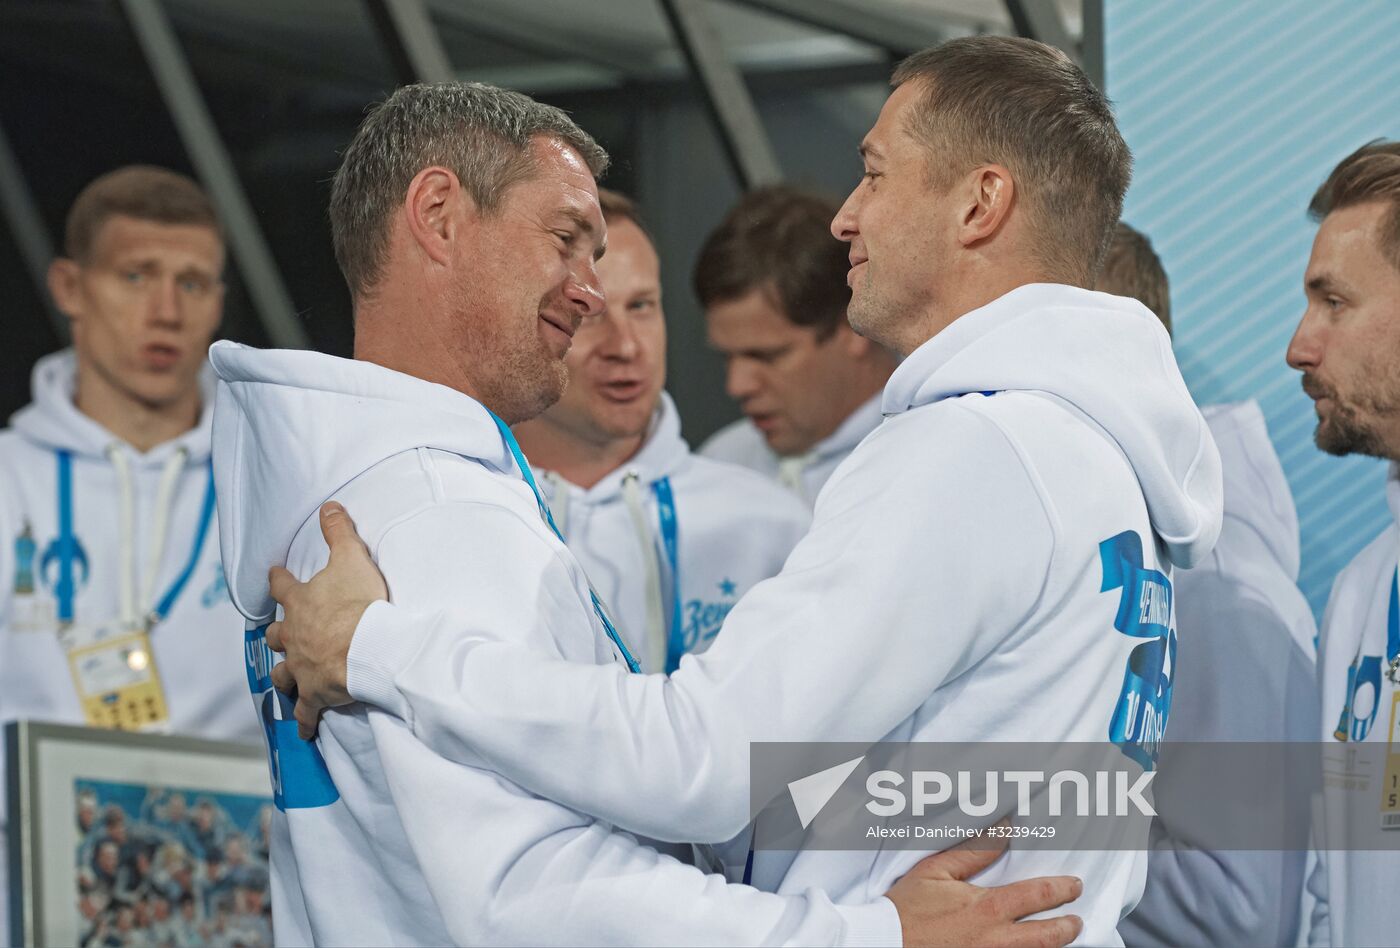 Russian Football Premier League. Zenit vs. Tosno